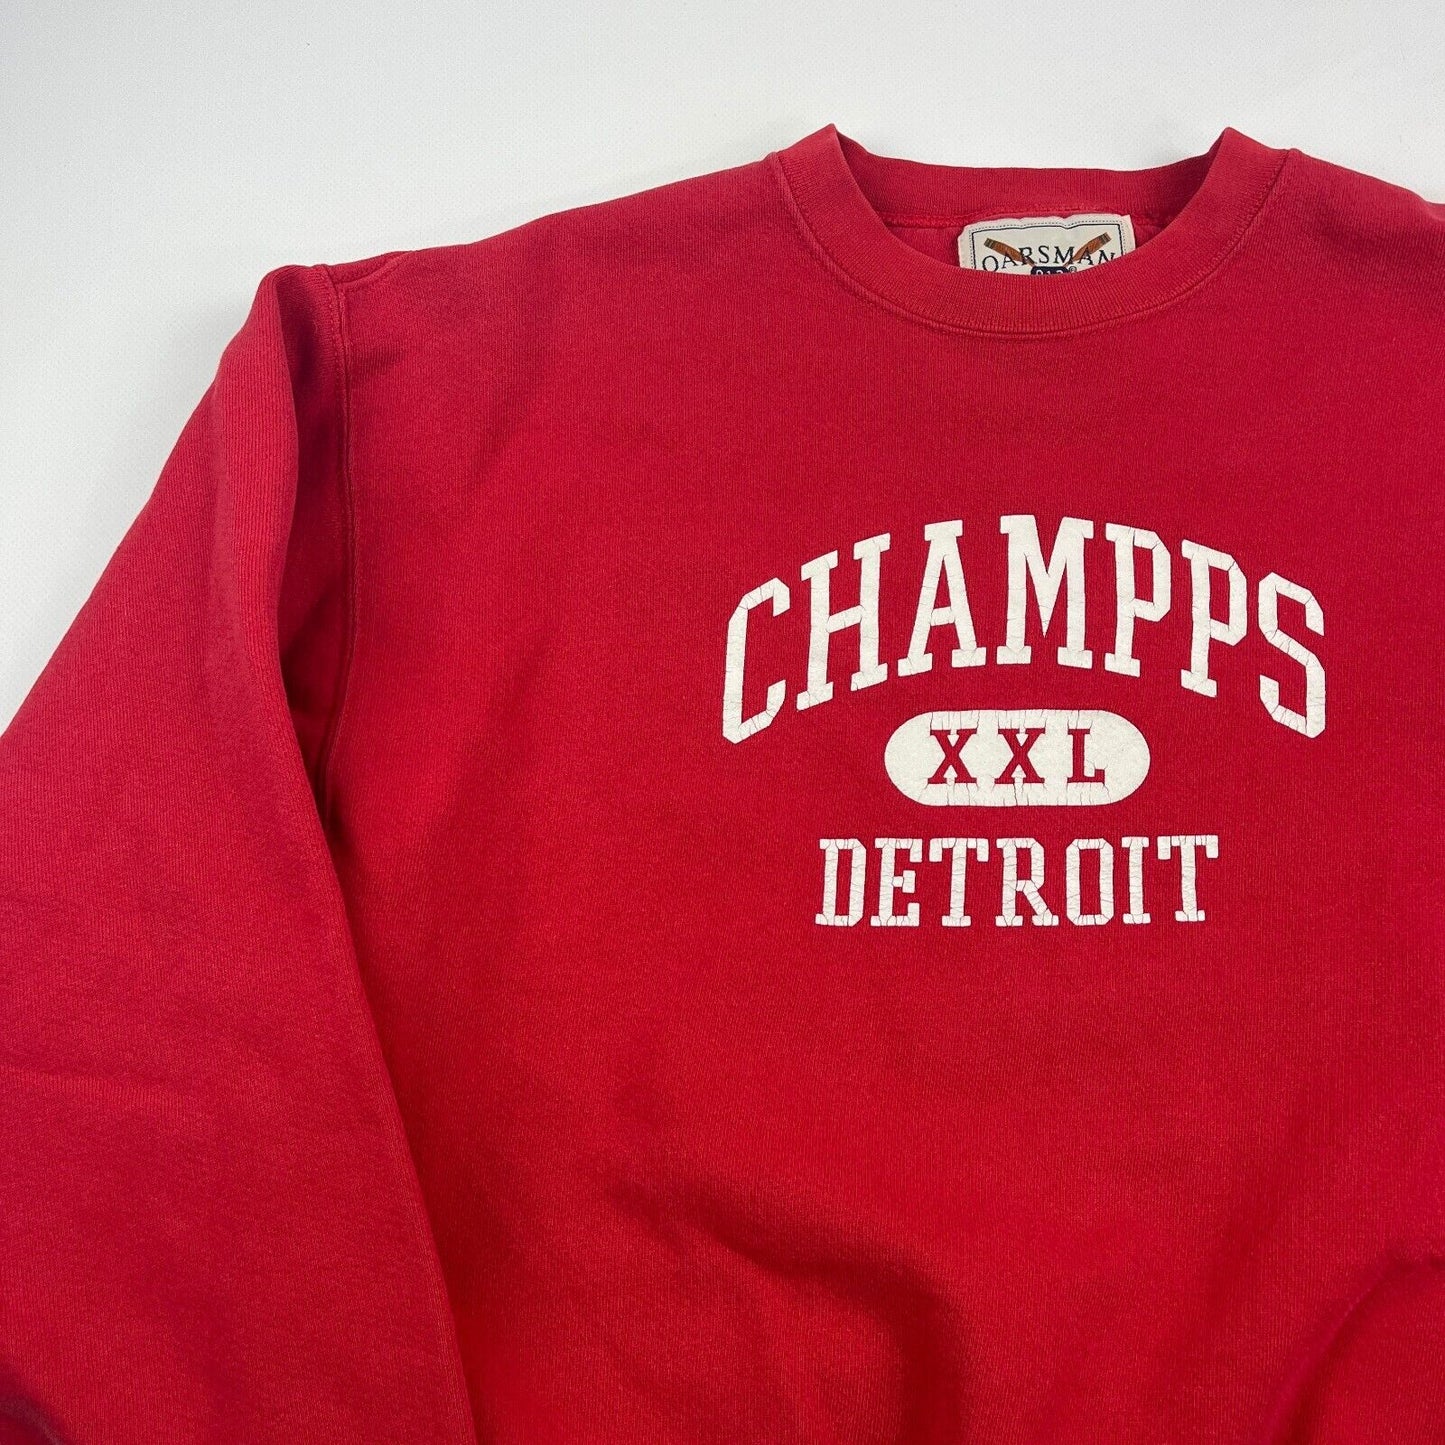 VINTAGE 90s Champs XXL Detroit Red Crewneck Sweater sz Large Men